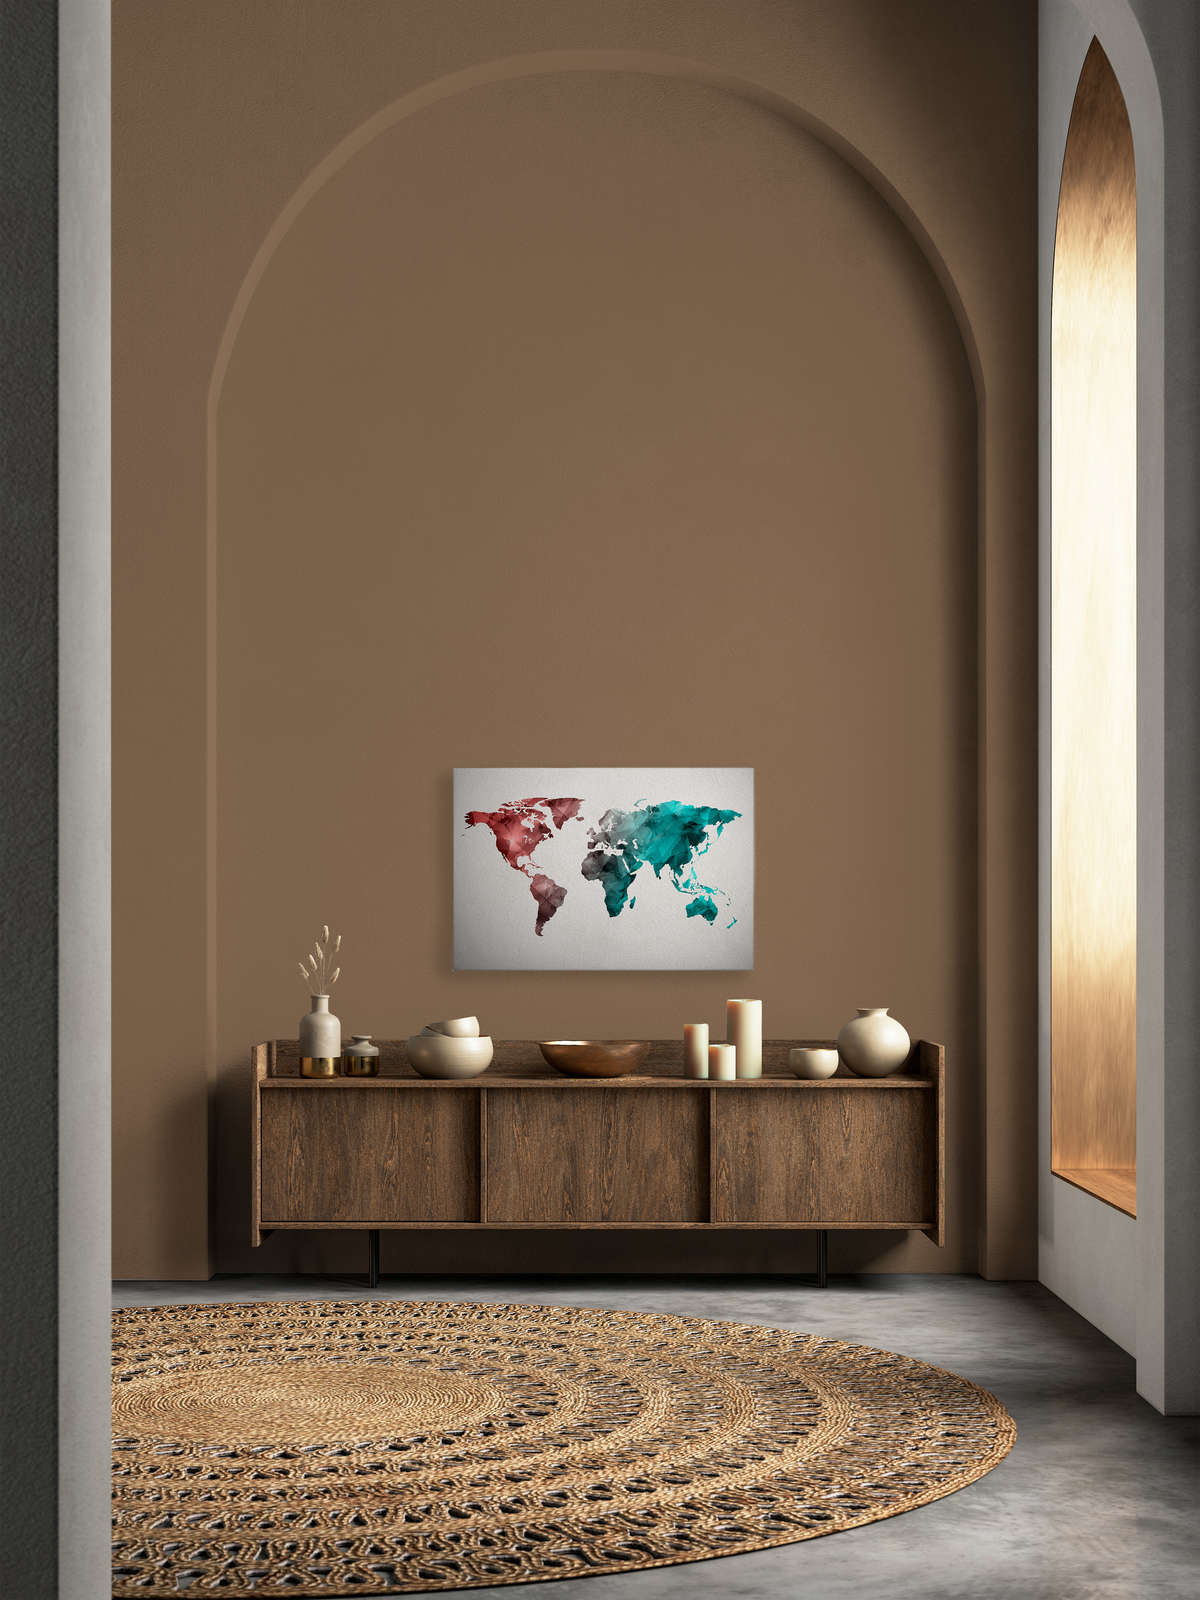             Tela con mappa del mondo realizzata con elementi grafici | WorldGrafic 2 - 0,90 m x 0,60 m
        